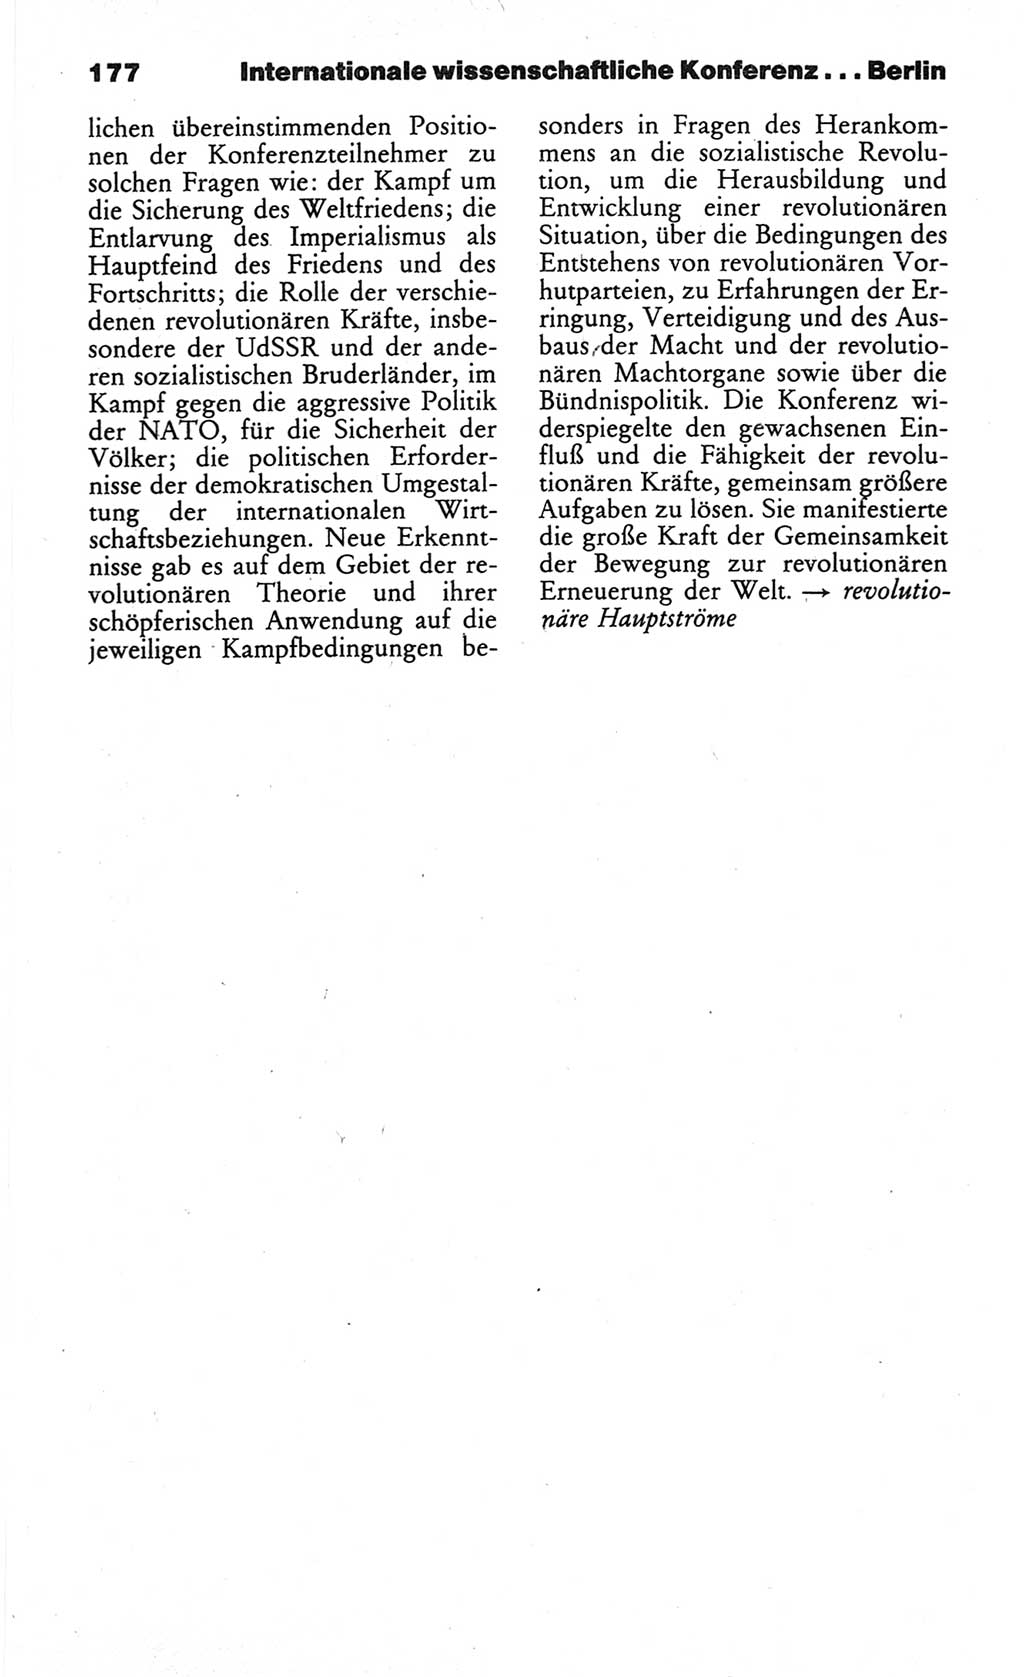 Wörterbuch des wissenschaftlichen Kommunismus [Deutsche Demokratische Republik (DDR)] 1984, Seite 177 (Wb. wiss. Komm. DDR 1984, S. 177)